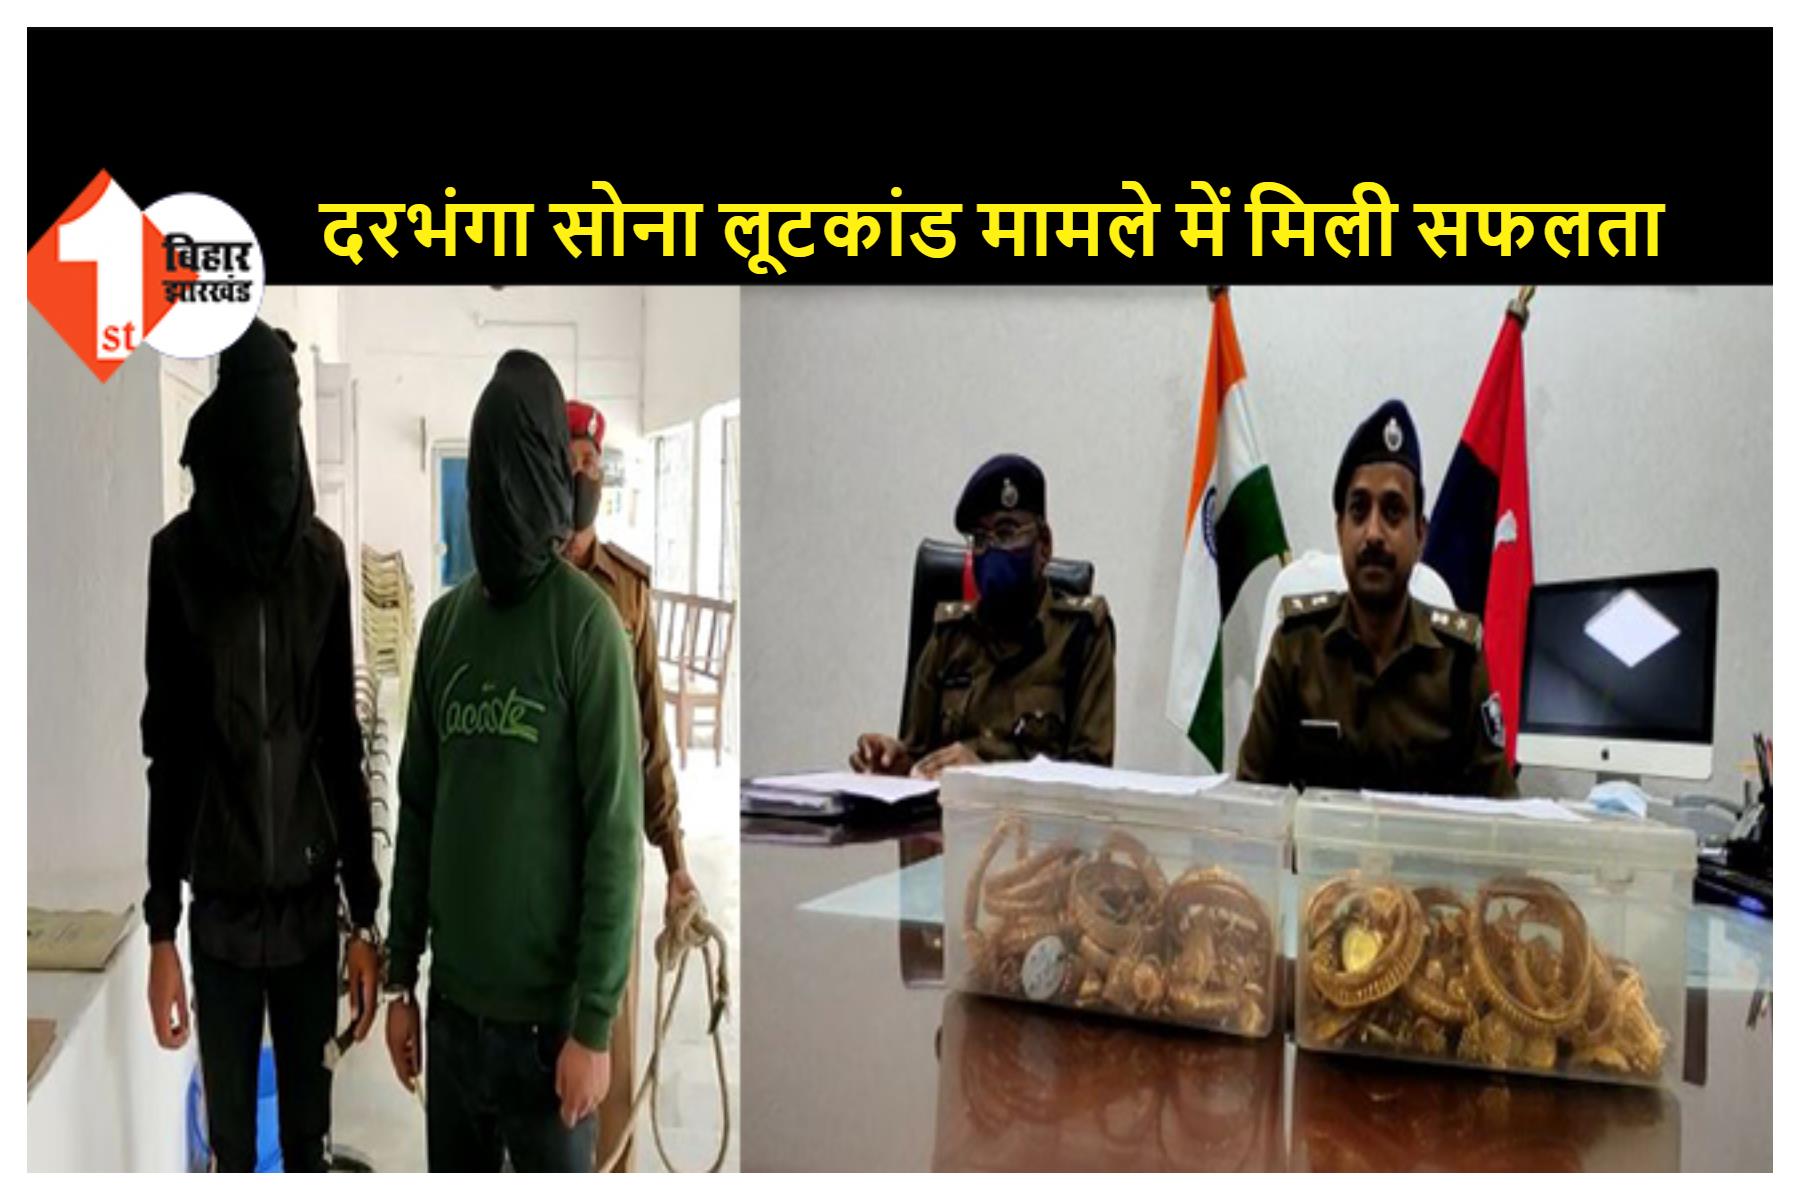 दिल्ली से गिरफ्तार अपराधियों की निशानदेही पर समस्तीपुर से दो लुटेरे गिरफ्तार, 1287 ग्राम सोना बरामद, STF और दरभंगा पुलिस की संयुक्त कार्रवाई  